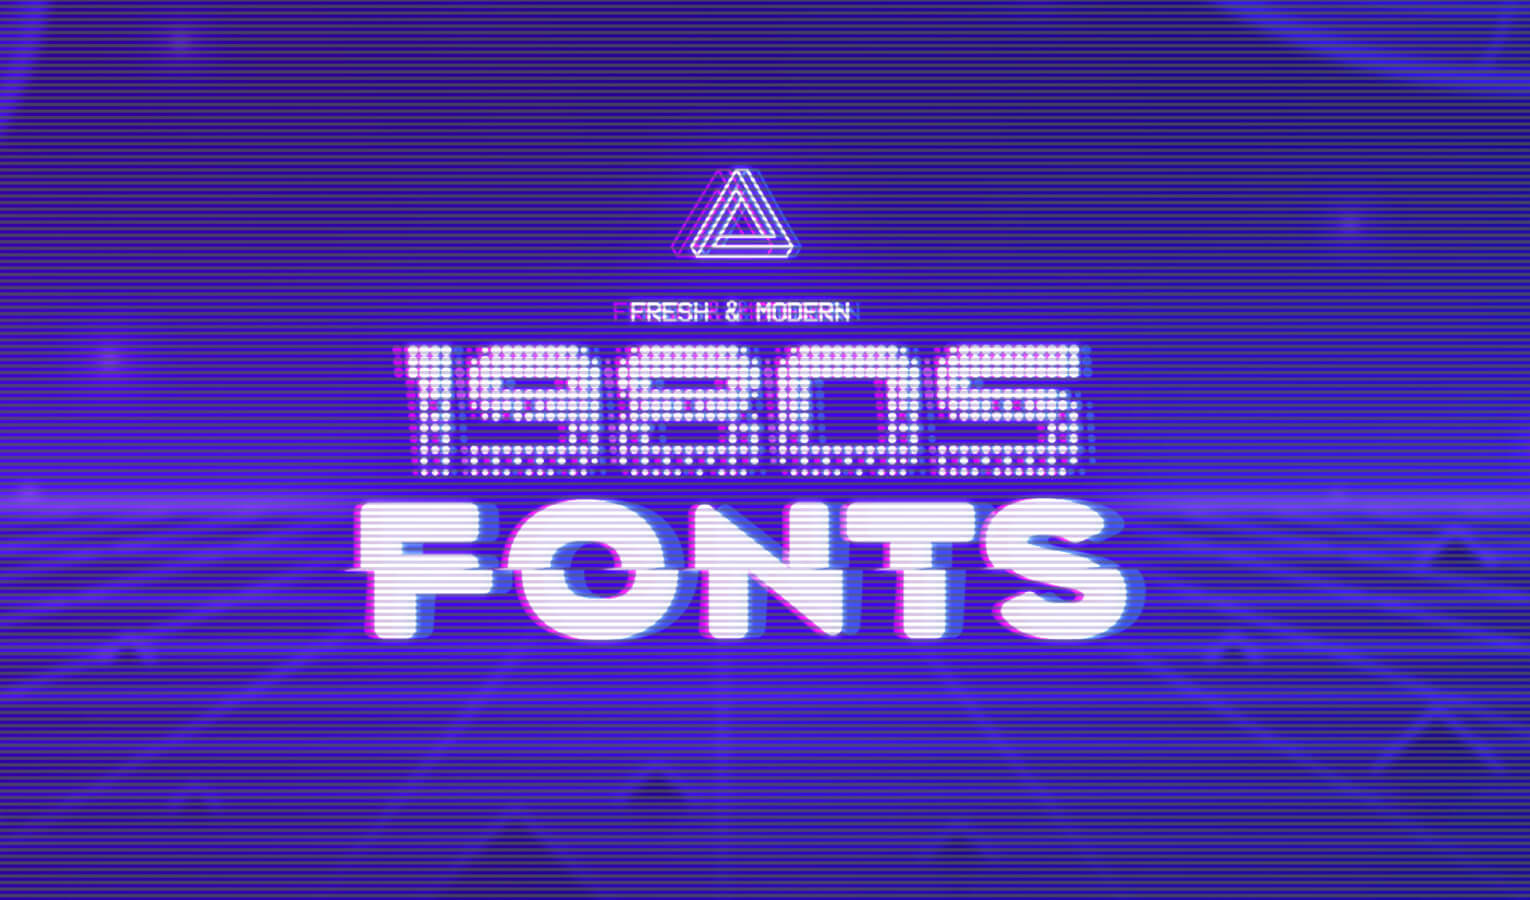 Font chữ 80s được lựa chọn kỹ lưỡng cho cảm giác tươi mới và hiện đại sẽ giúp cho bất kỳ thiết kế nào của bạn trở nên độc đáo và thu hút hơn. Chắc chắn rằng những font chữ này sẽ khiến khách hàng của bạn nhớ mãi sản phẩm của bạn.